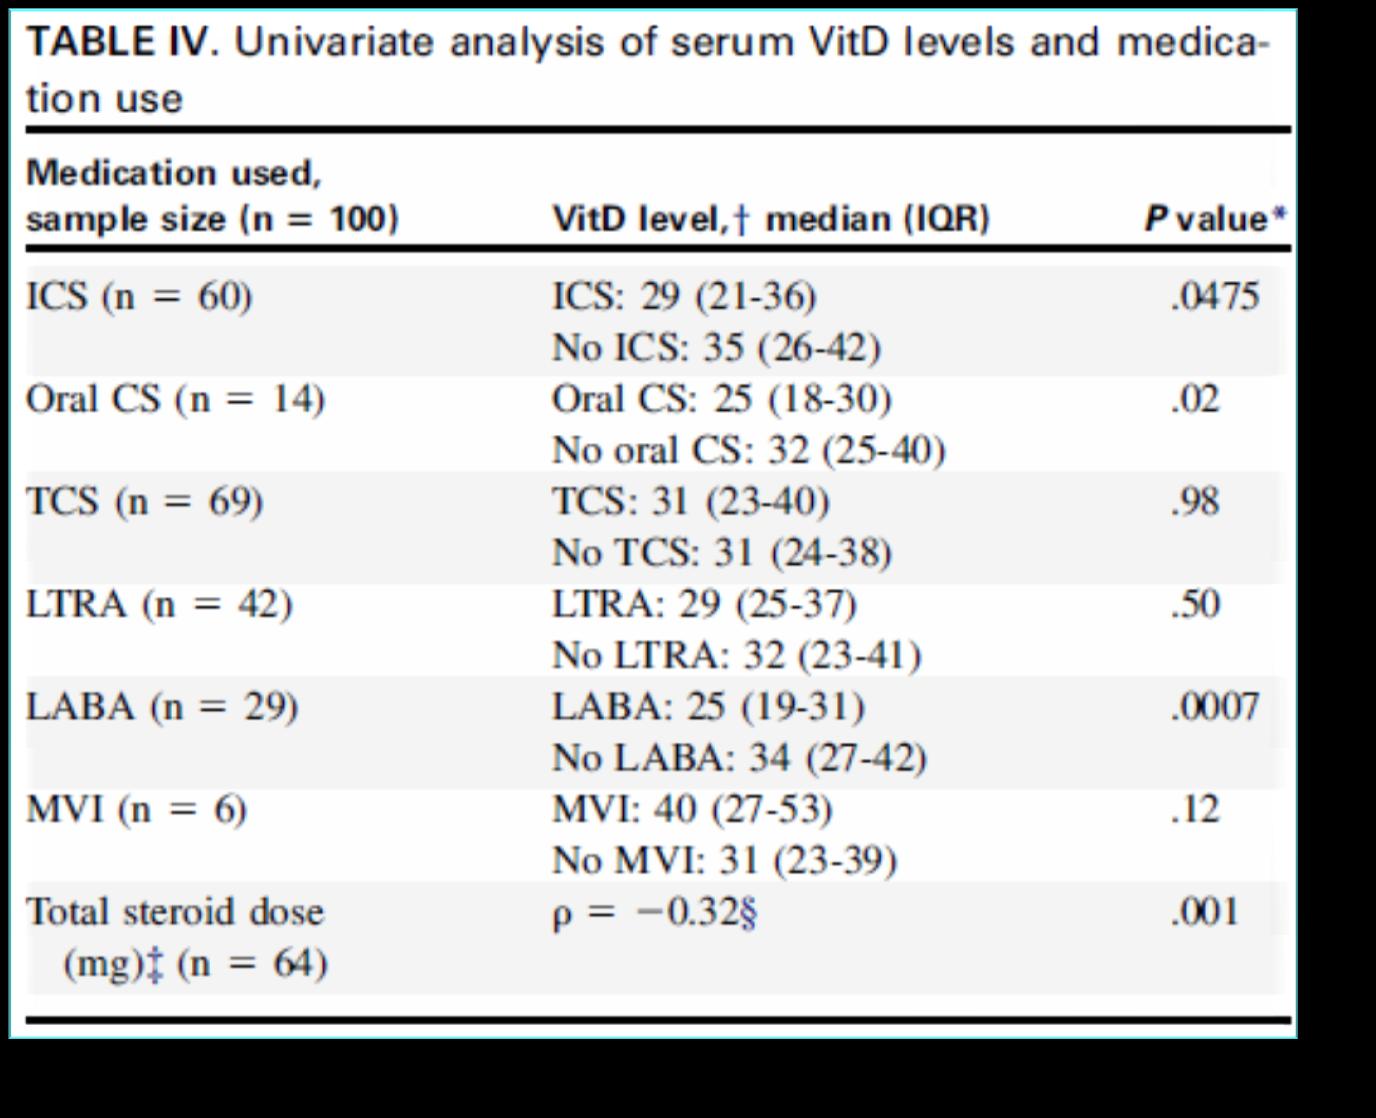 Decreased serum vitamin D levels in